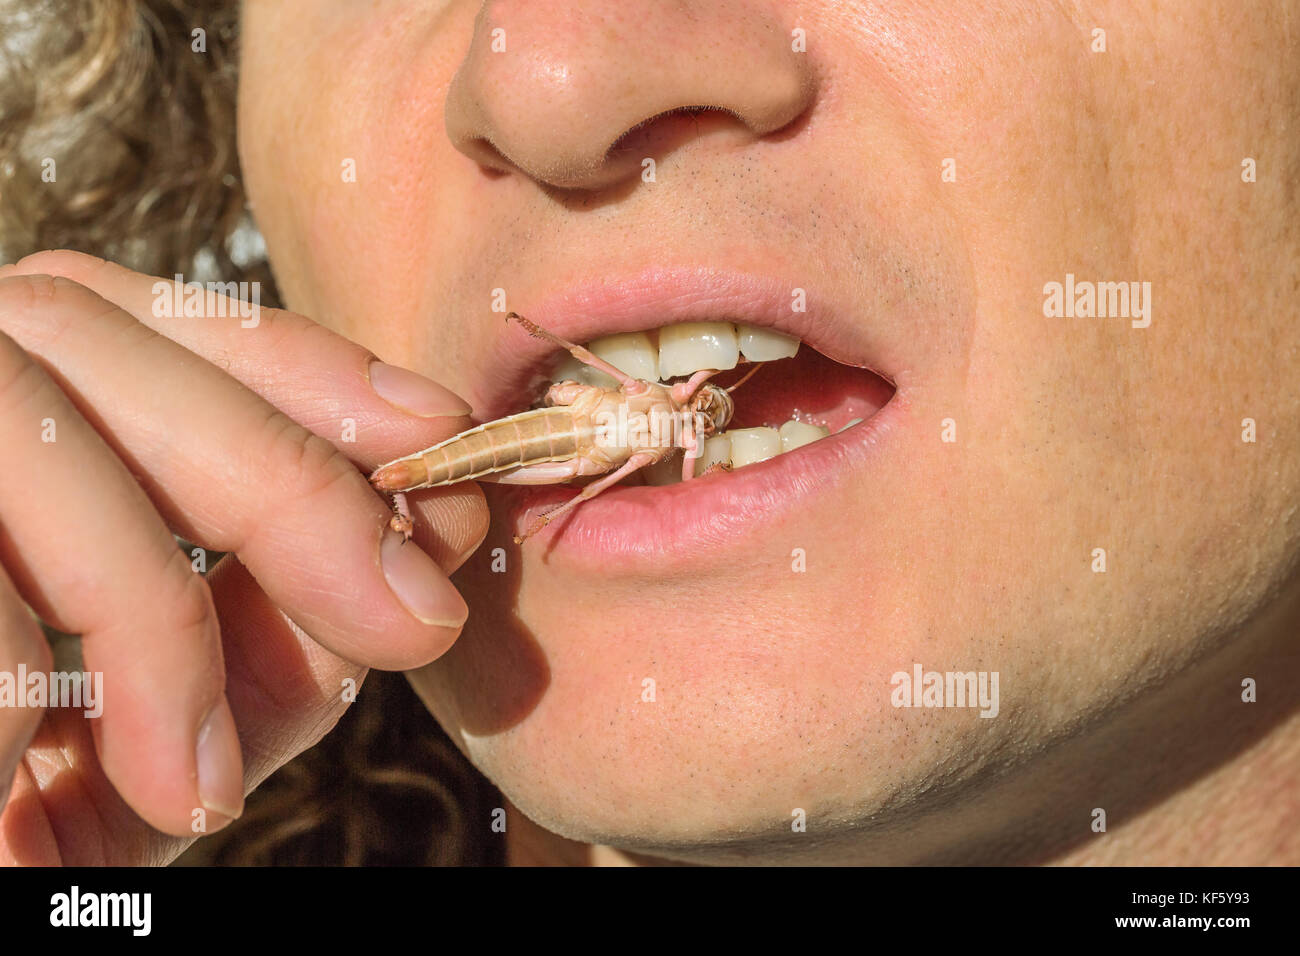 people eating bug Stock Photo